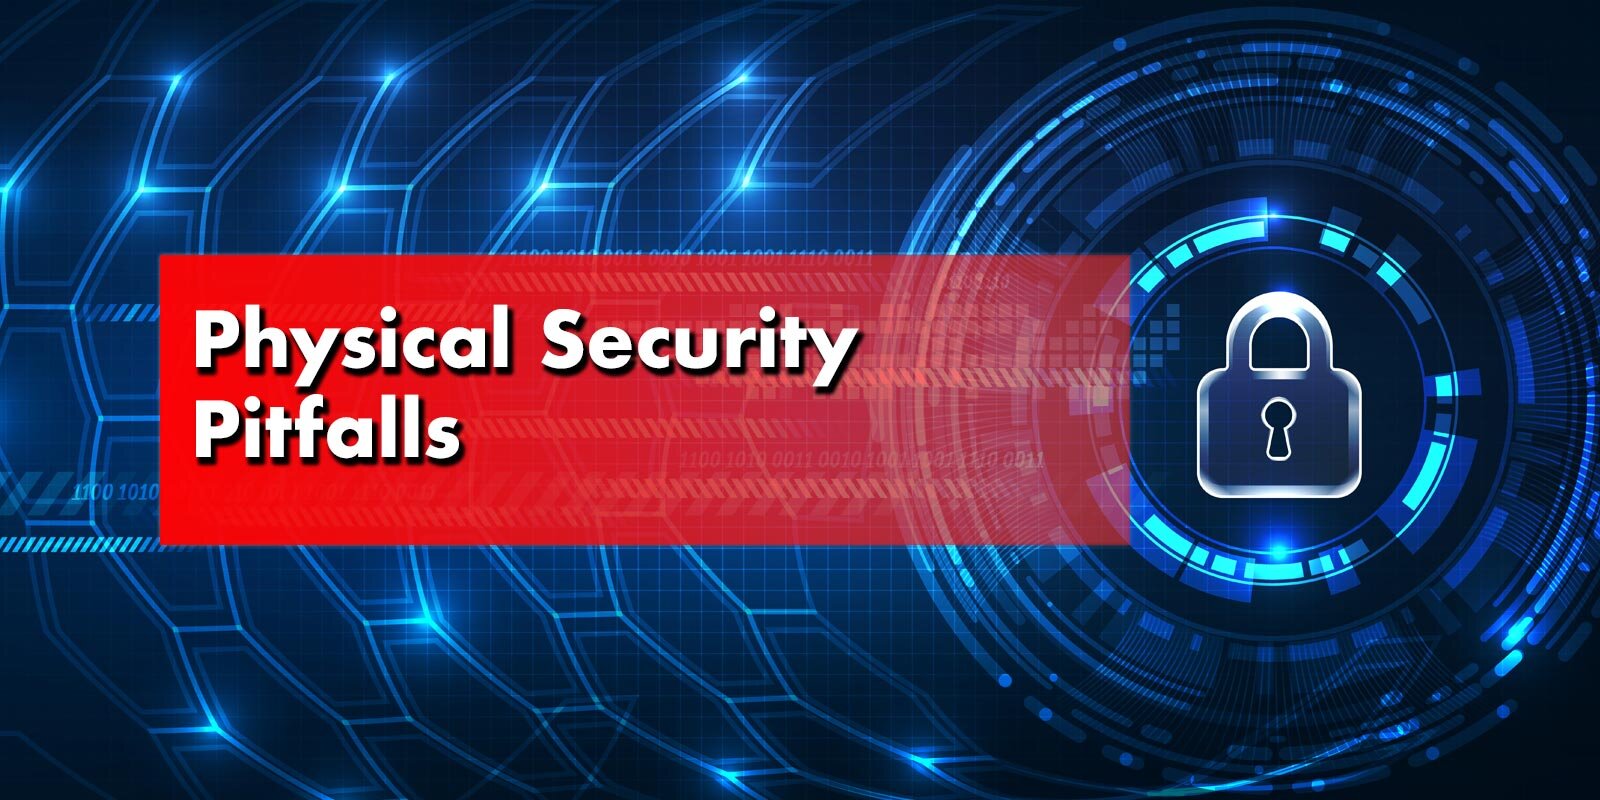 Physical Security Pitfalls